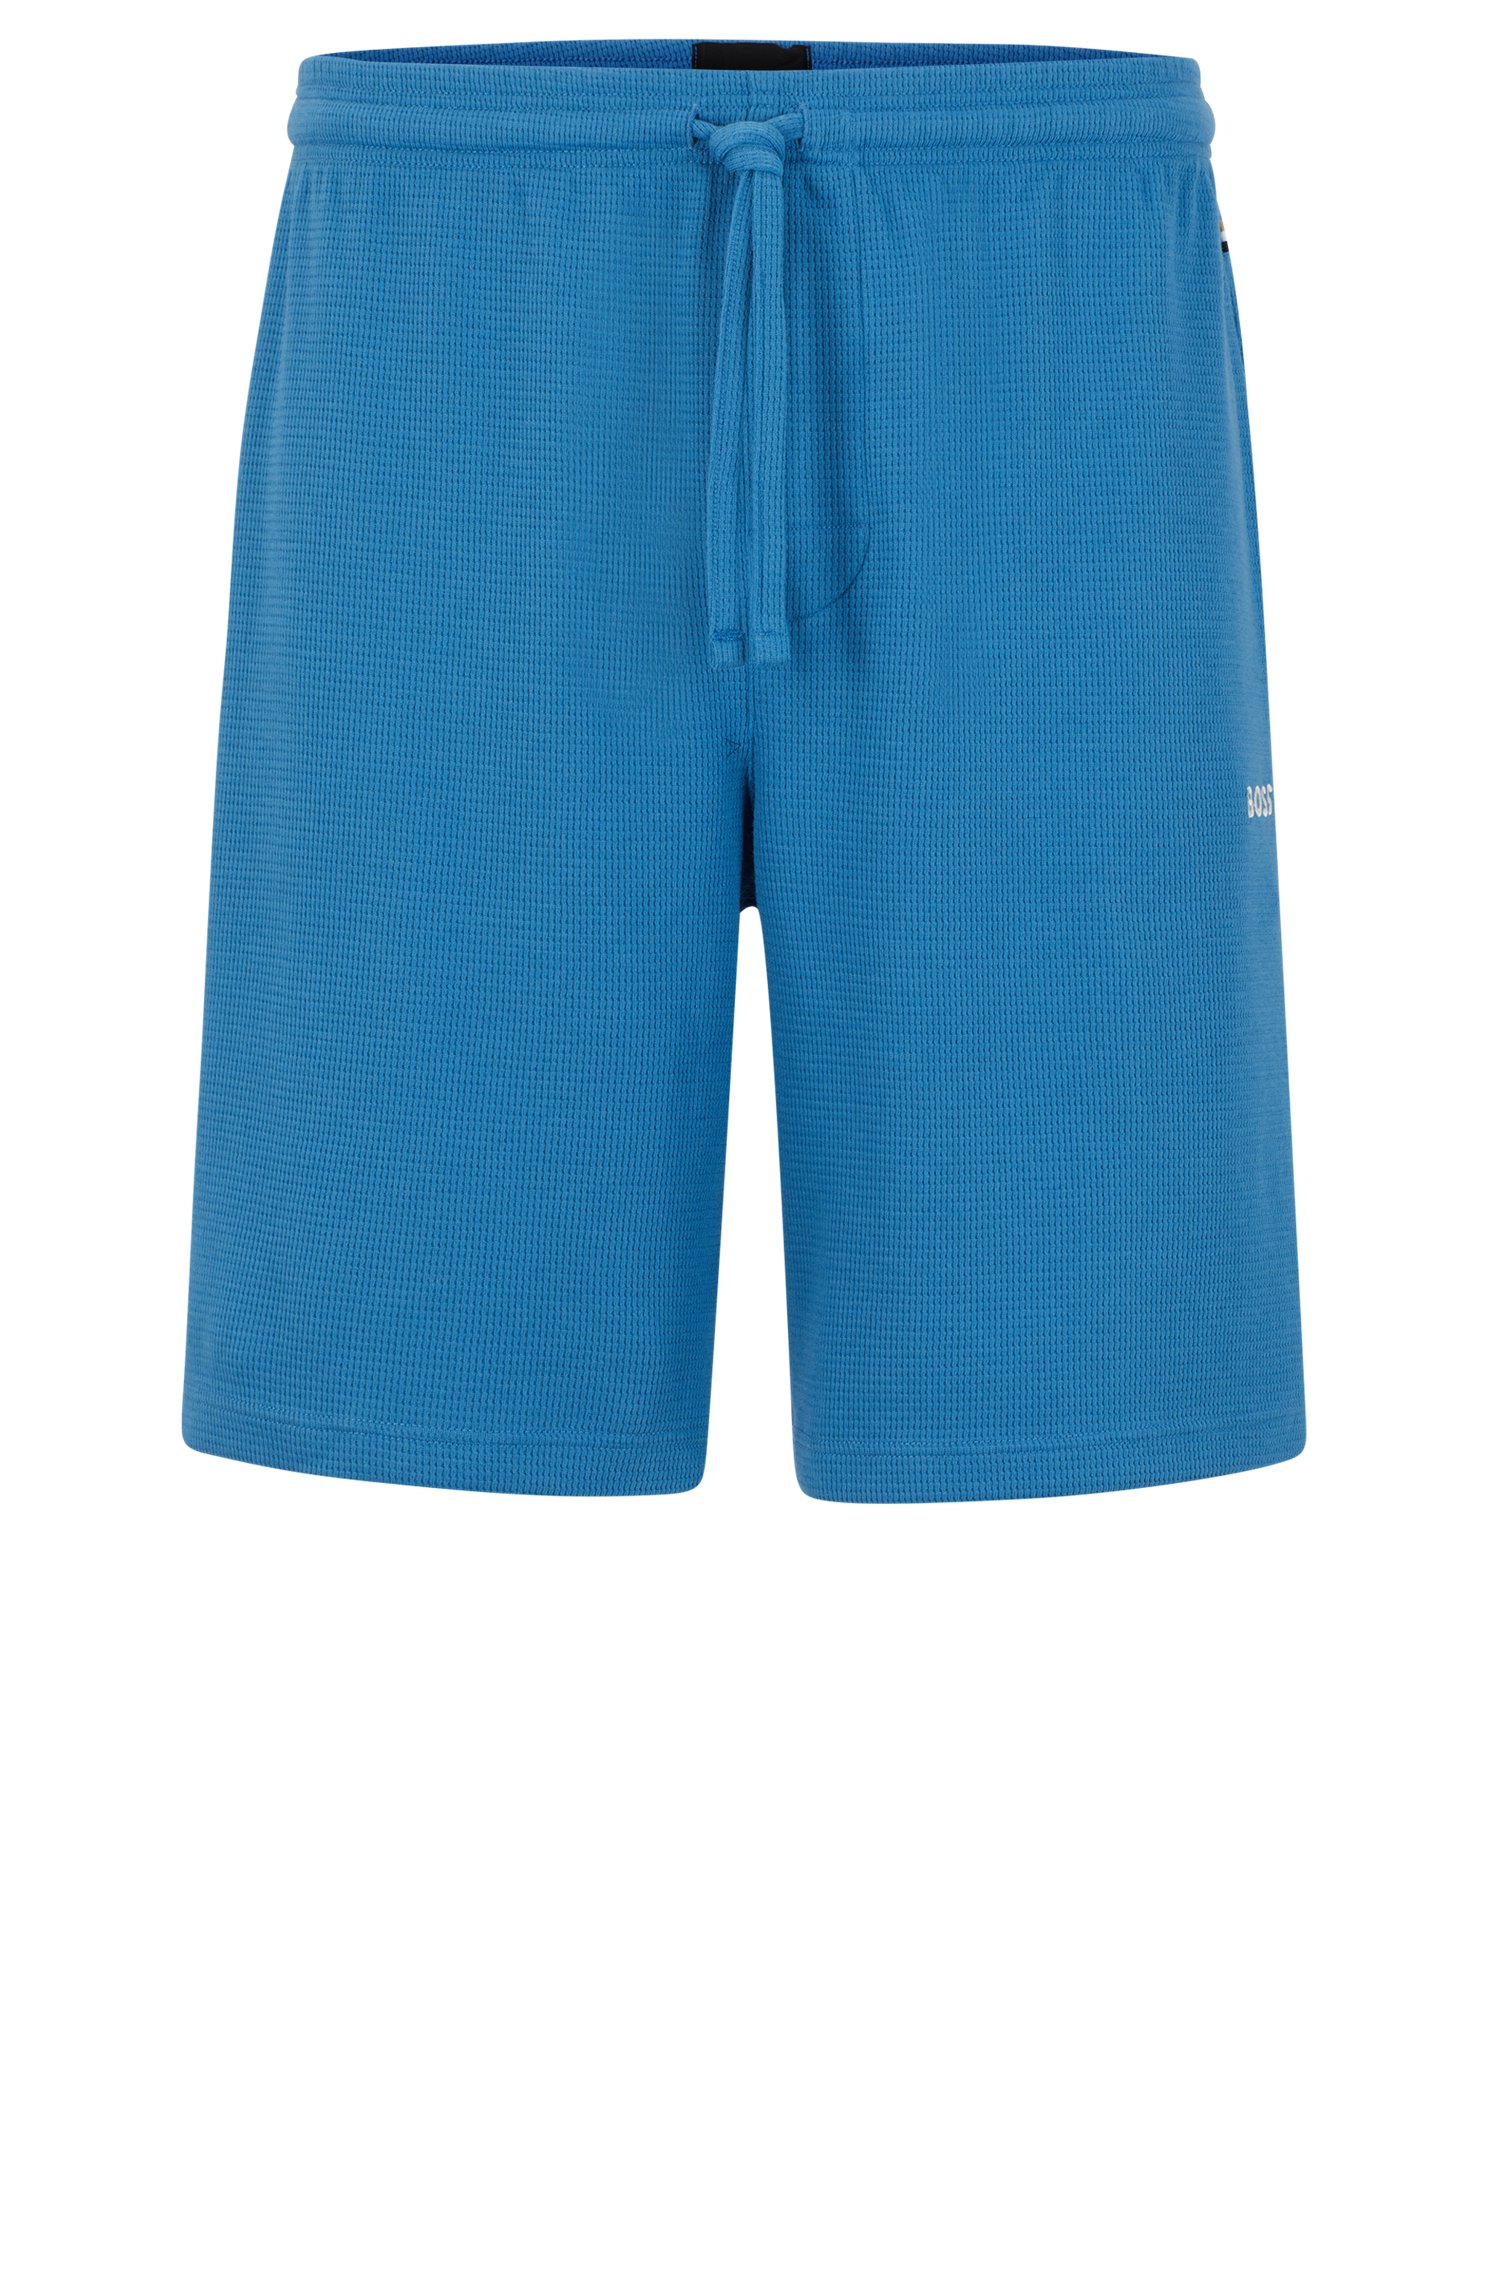 Shorts de pijama con estructura rejilla y logo bordado